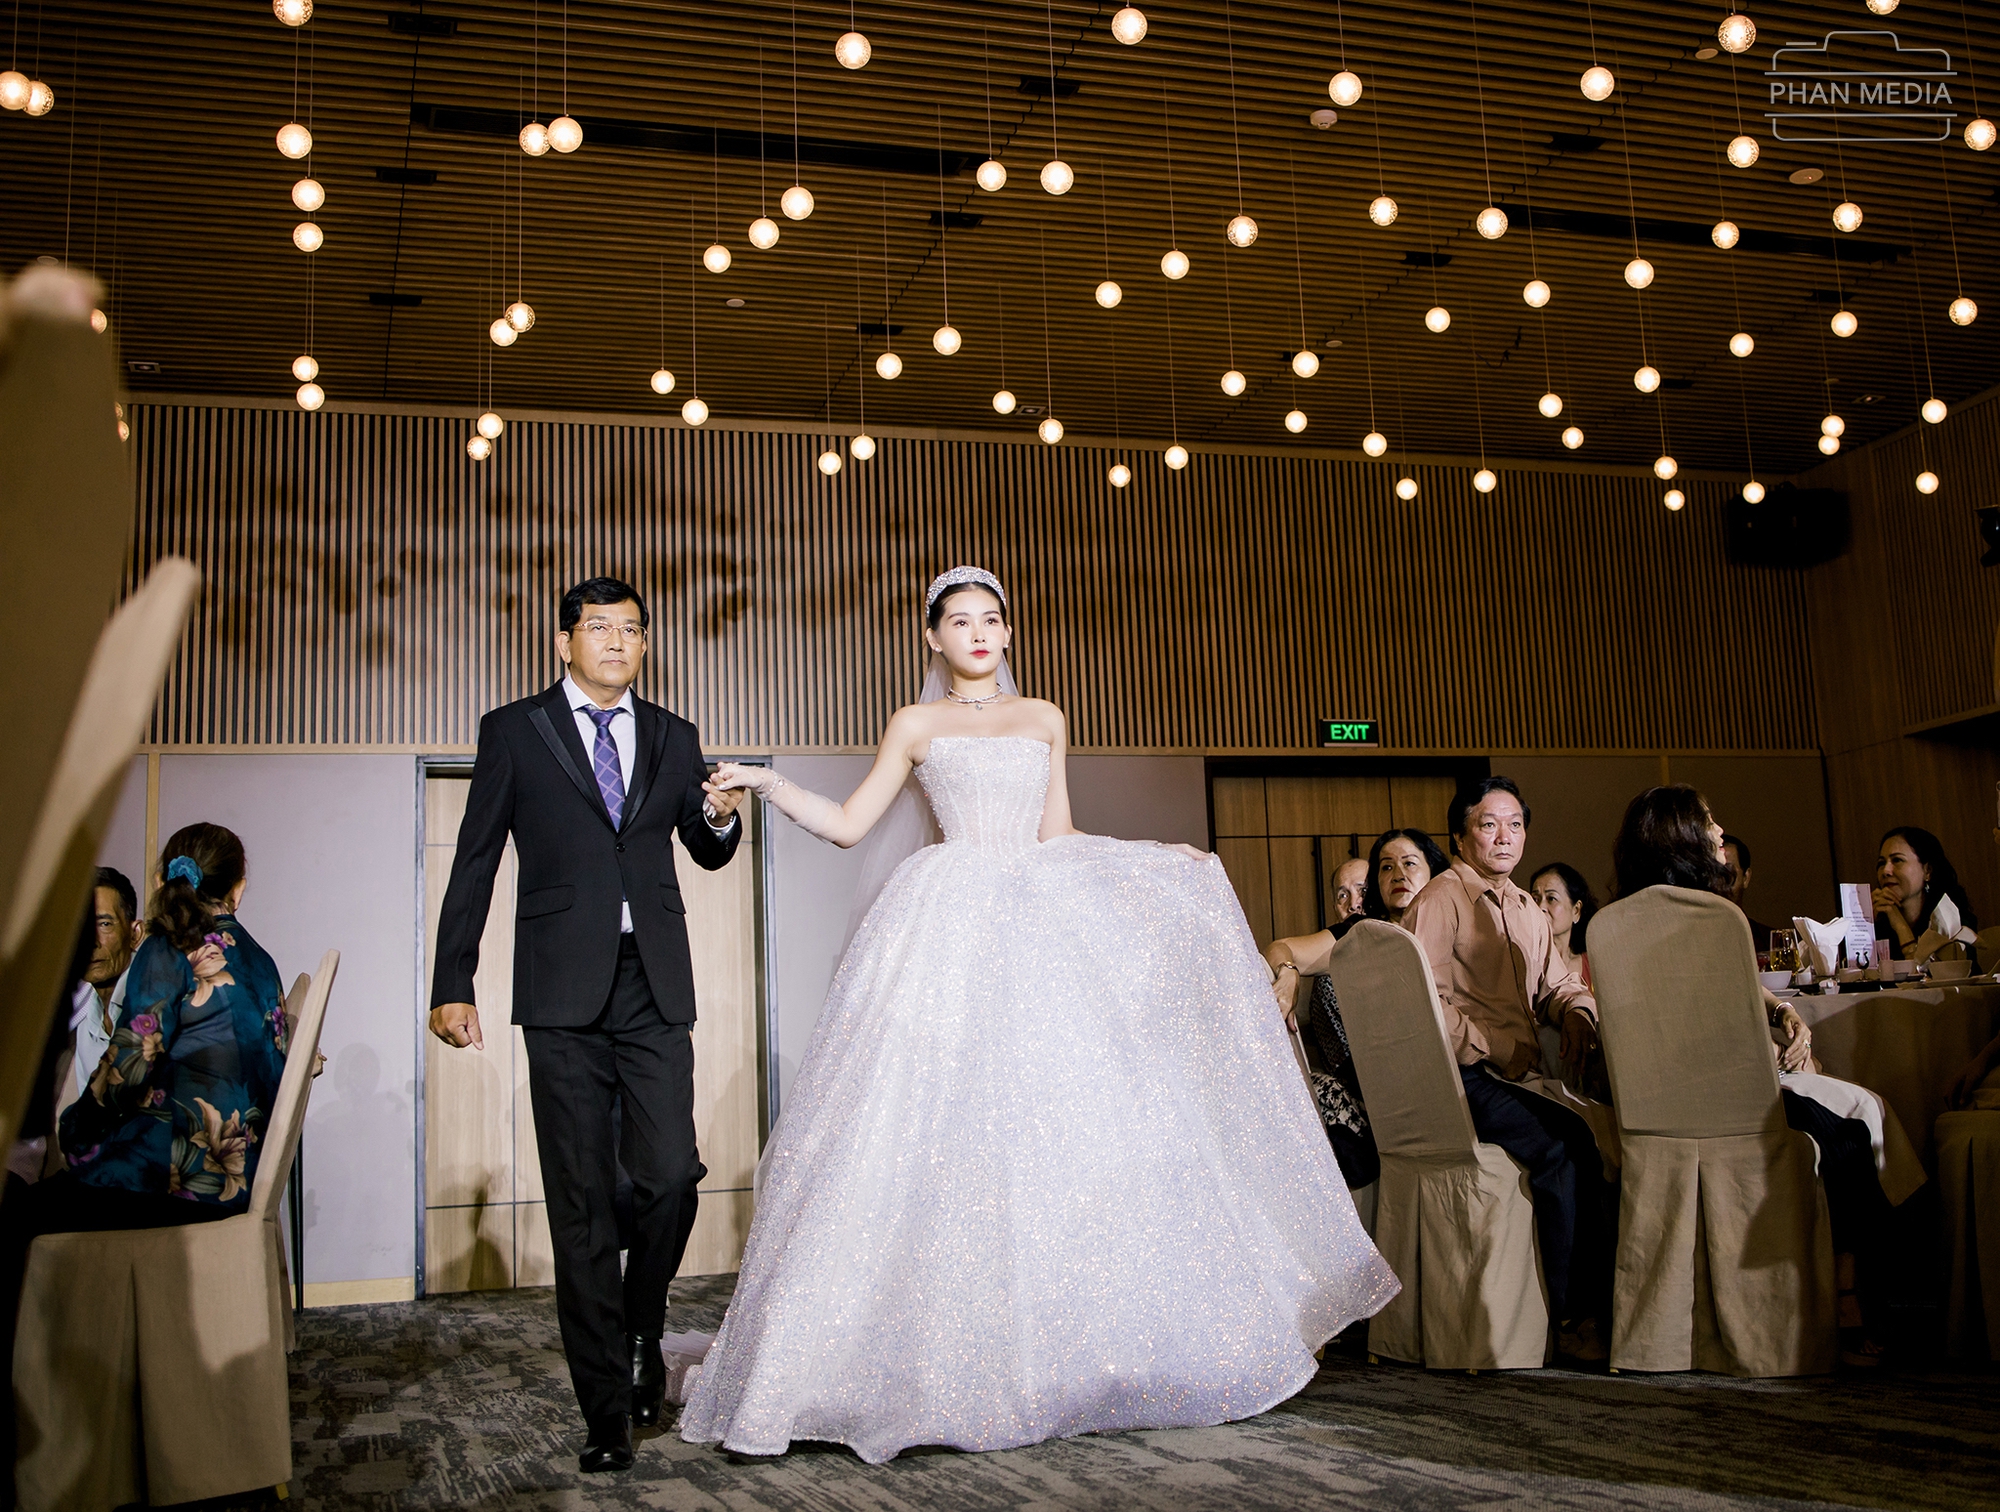 Ngân Anh khoe nhan sắc ngọt ngào, khiêu vũ cùng chồng biên tập viên trong đám cưới ở Quy Nhơn   - Ảnh 2.